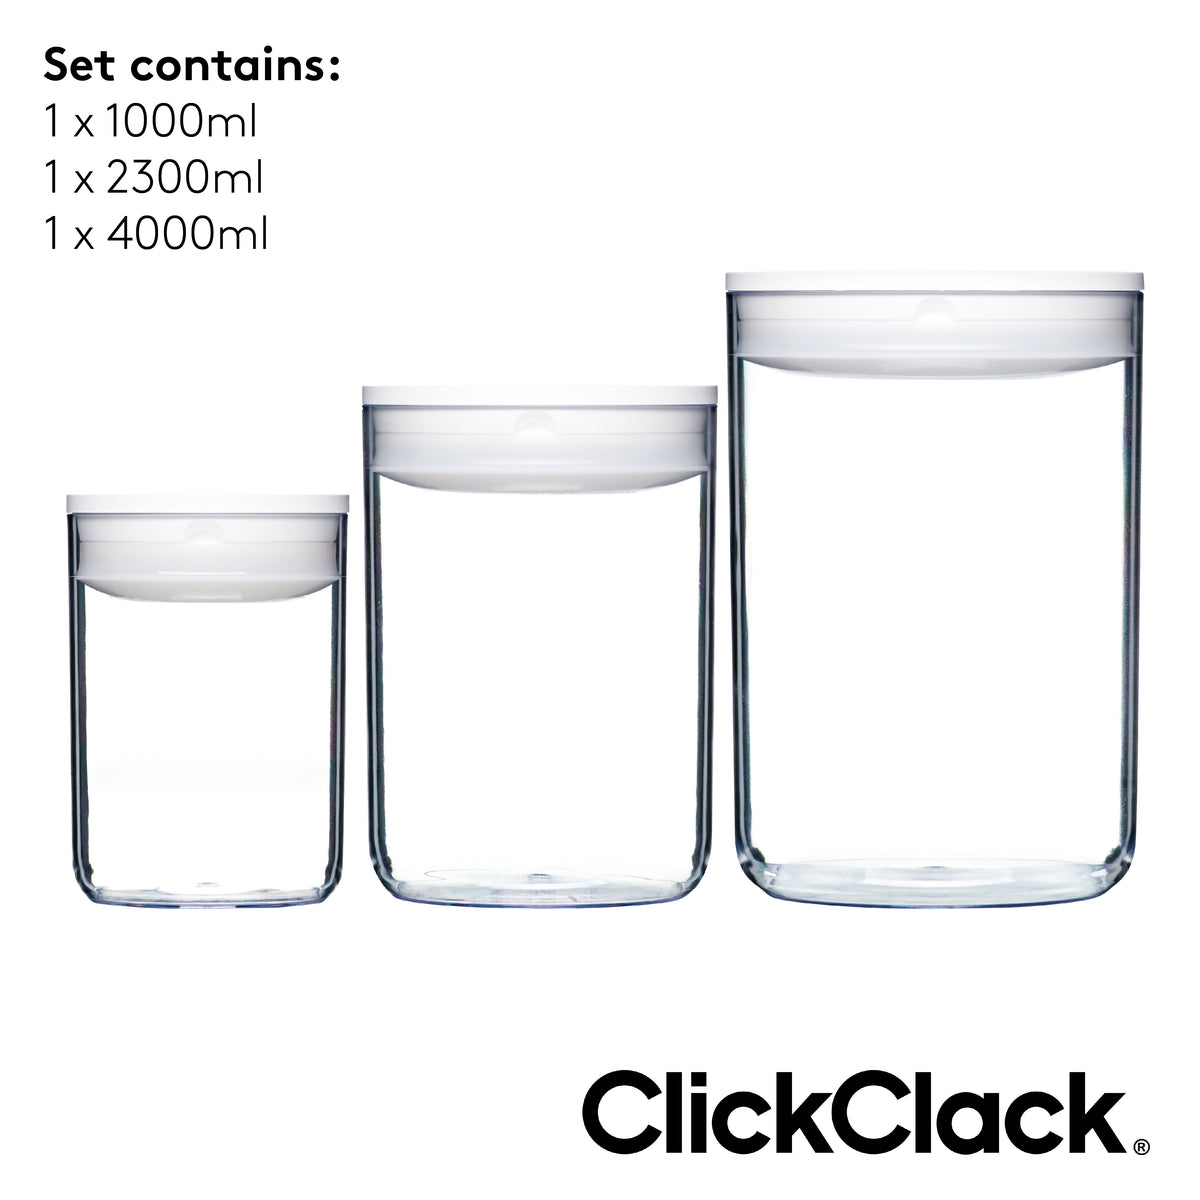 ClickClack® Pantry Round - Large 3 Piece Set